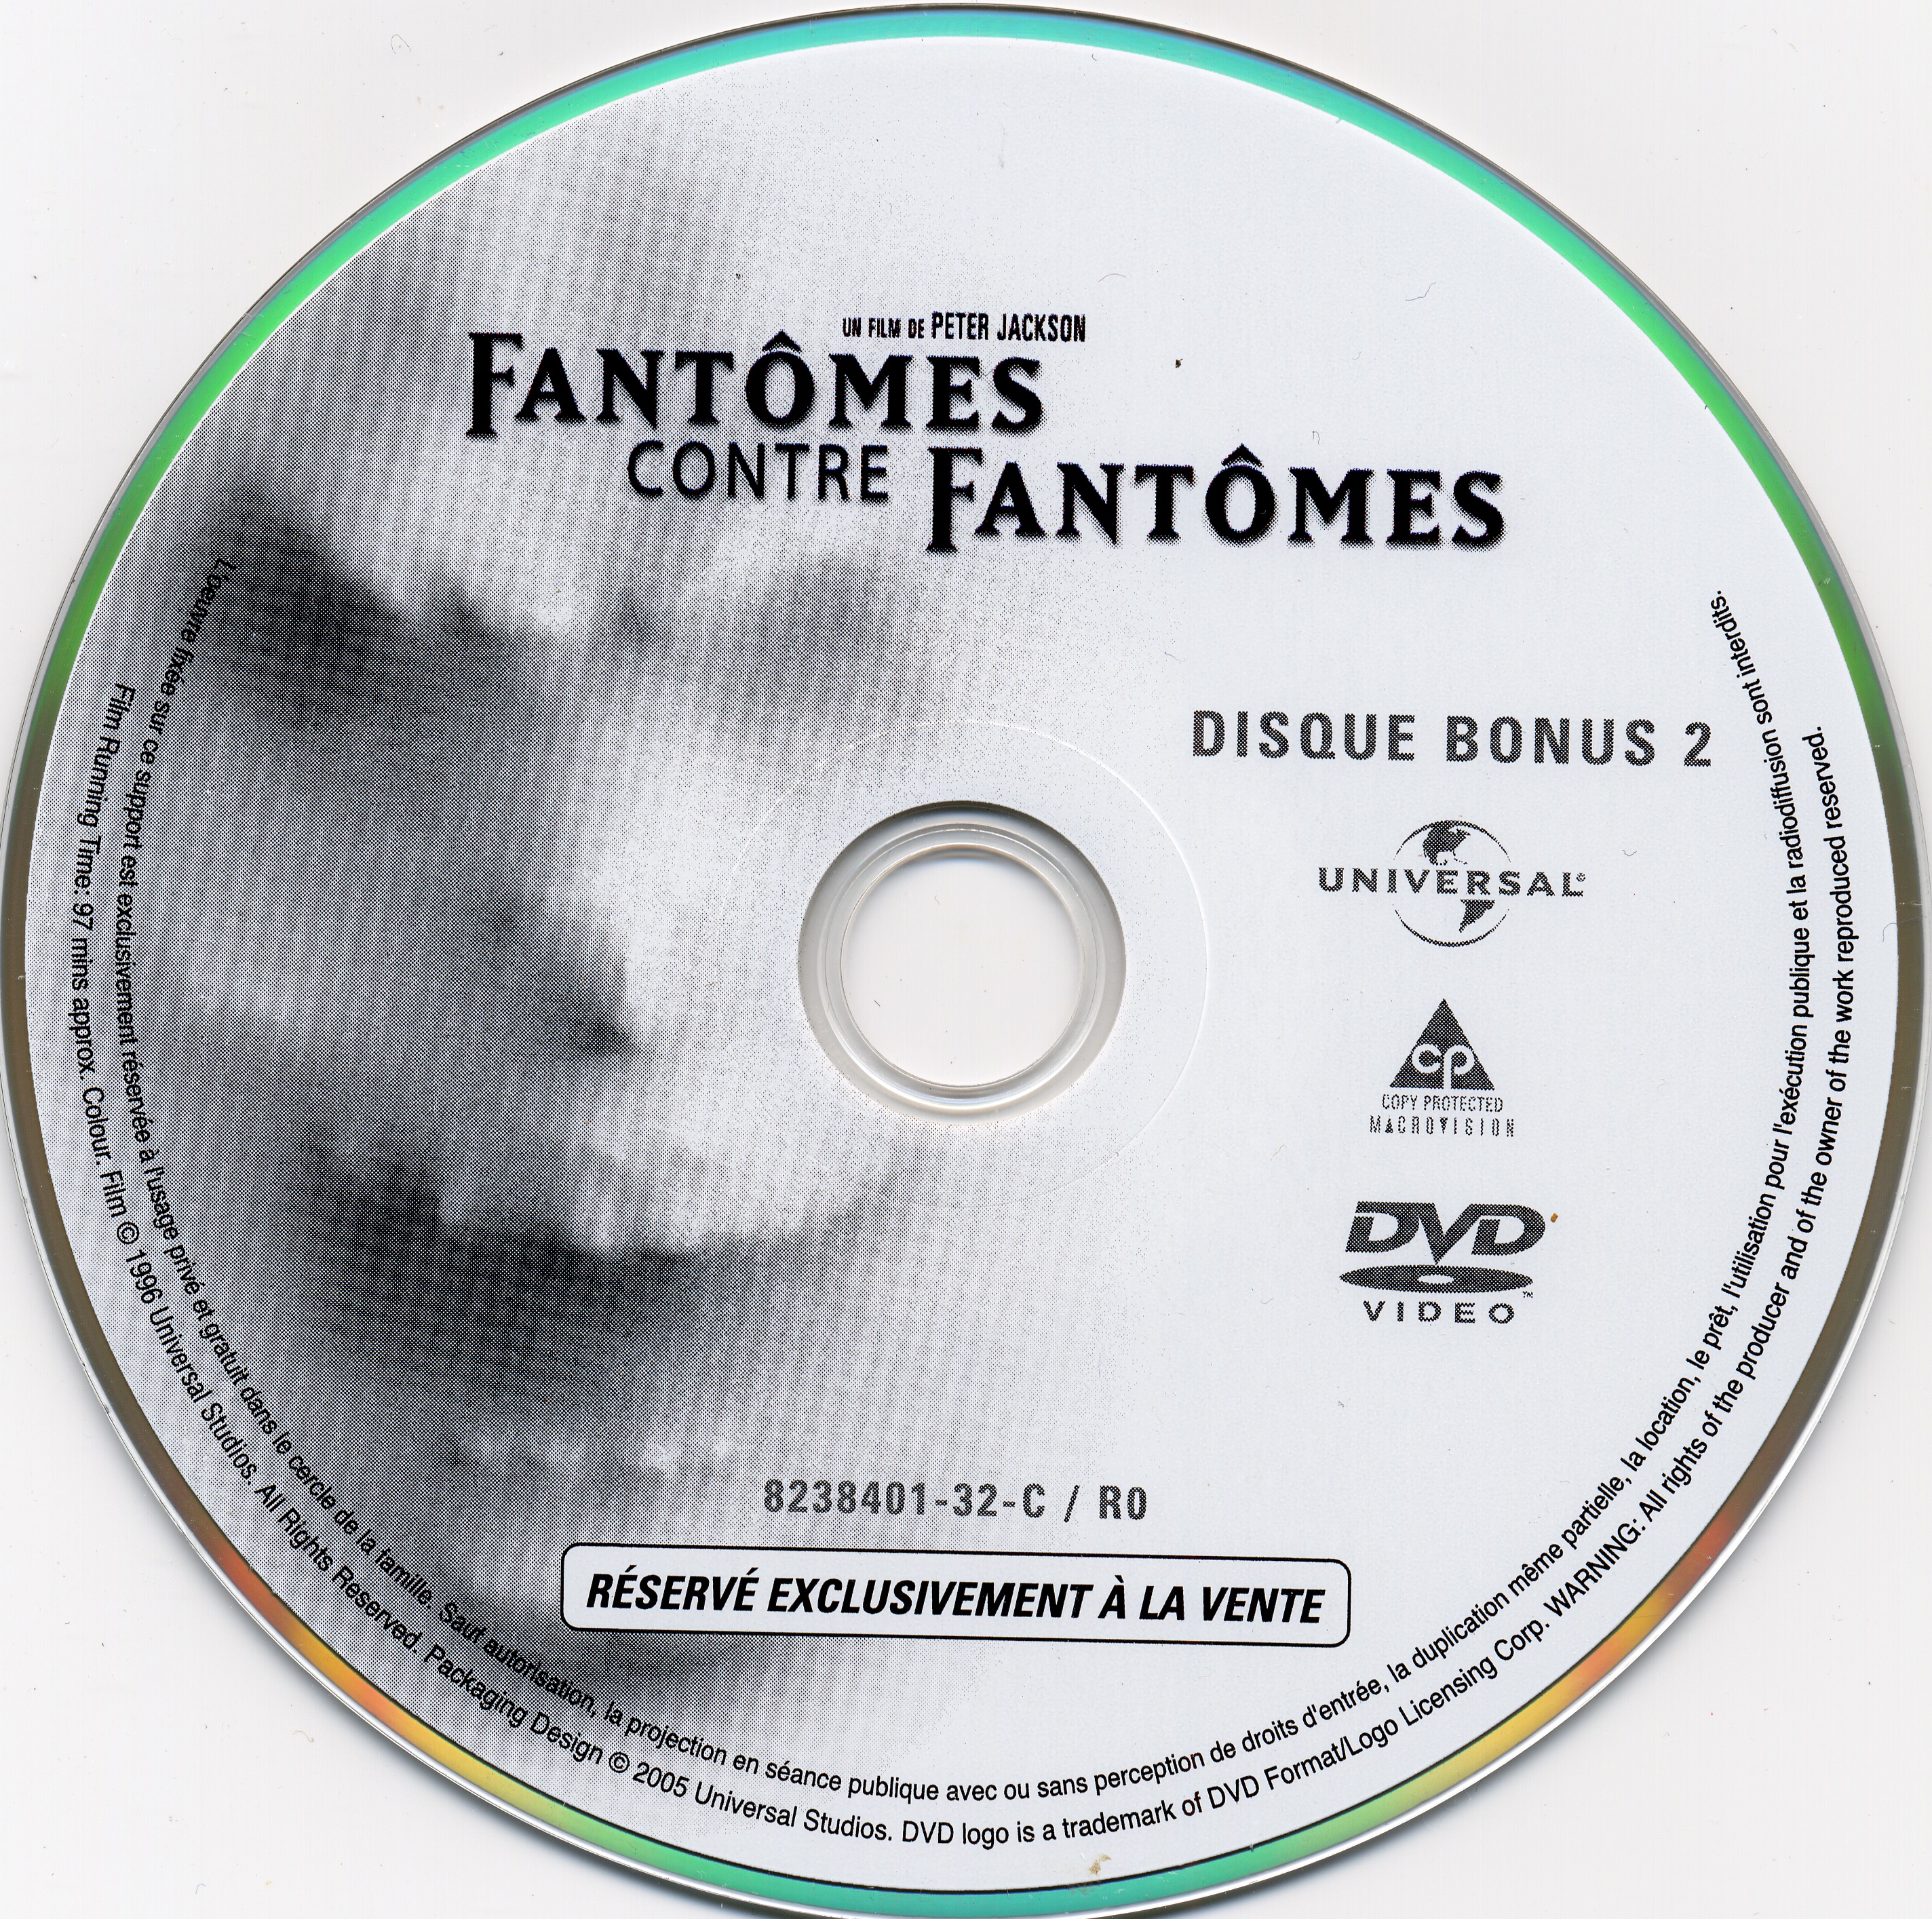 Fantomes contre fantomes DISC 3